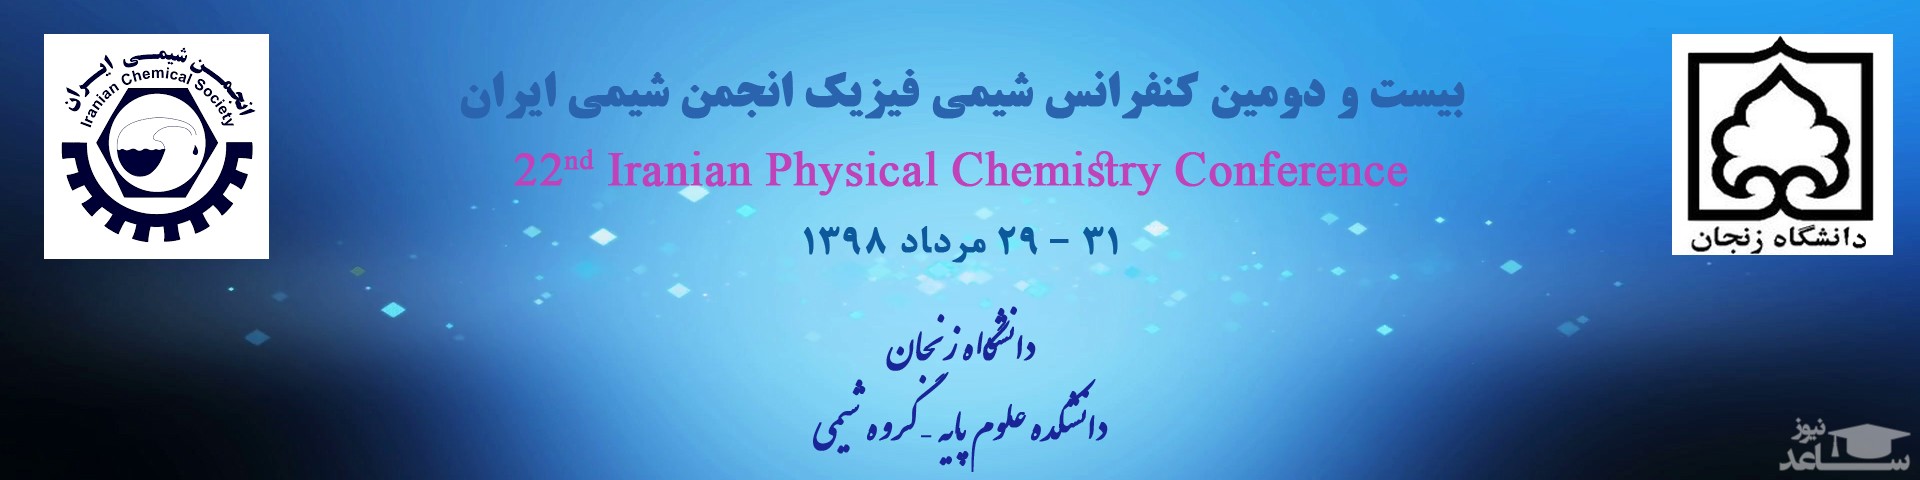 بیست و دومین کنفرانس ملی شیمی فیزیک ایران